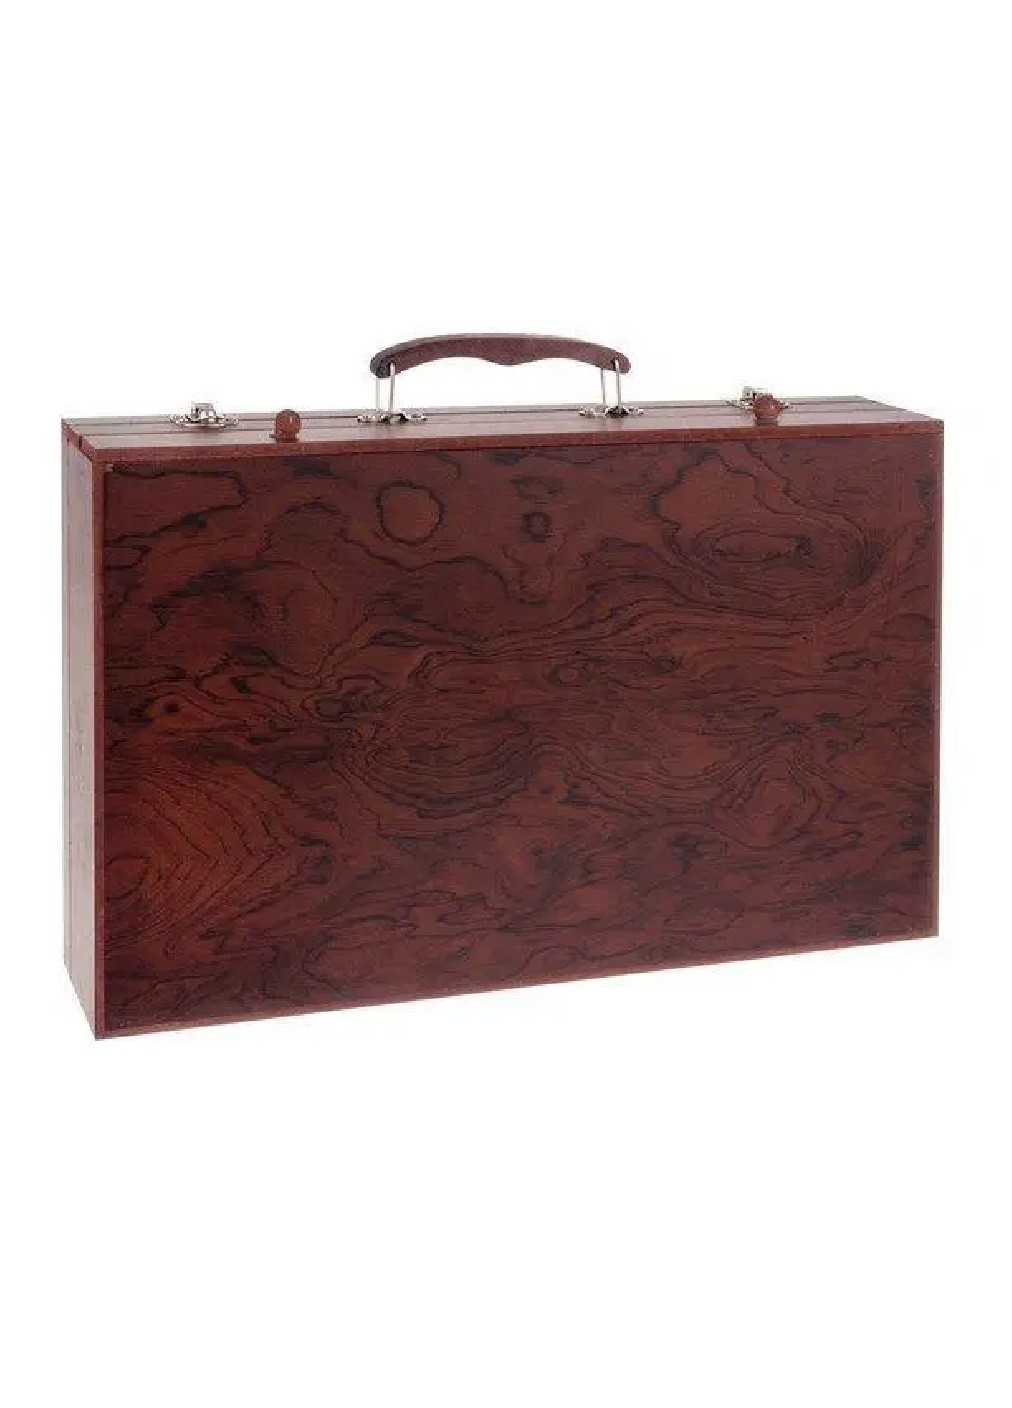 Художественный набор для творчества рисования в деревянном кейсе чемодане 143 предмета 23х37,5х8см (475970-Prob) Unbranded (275068669)